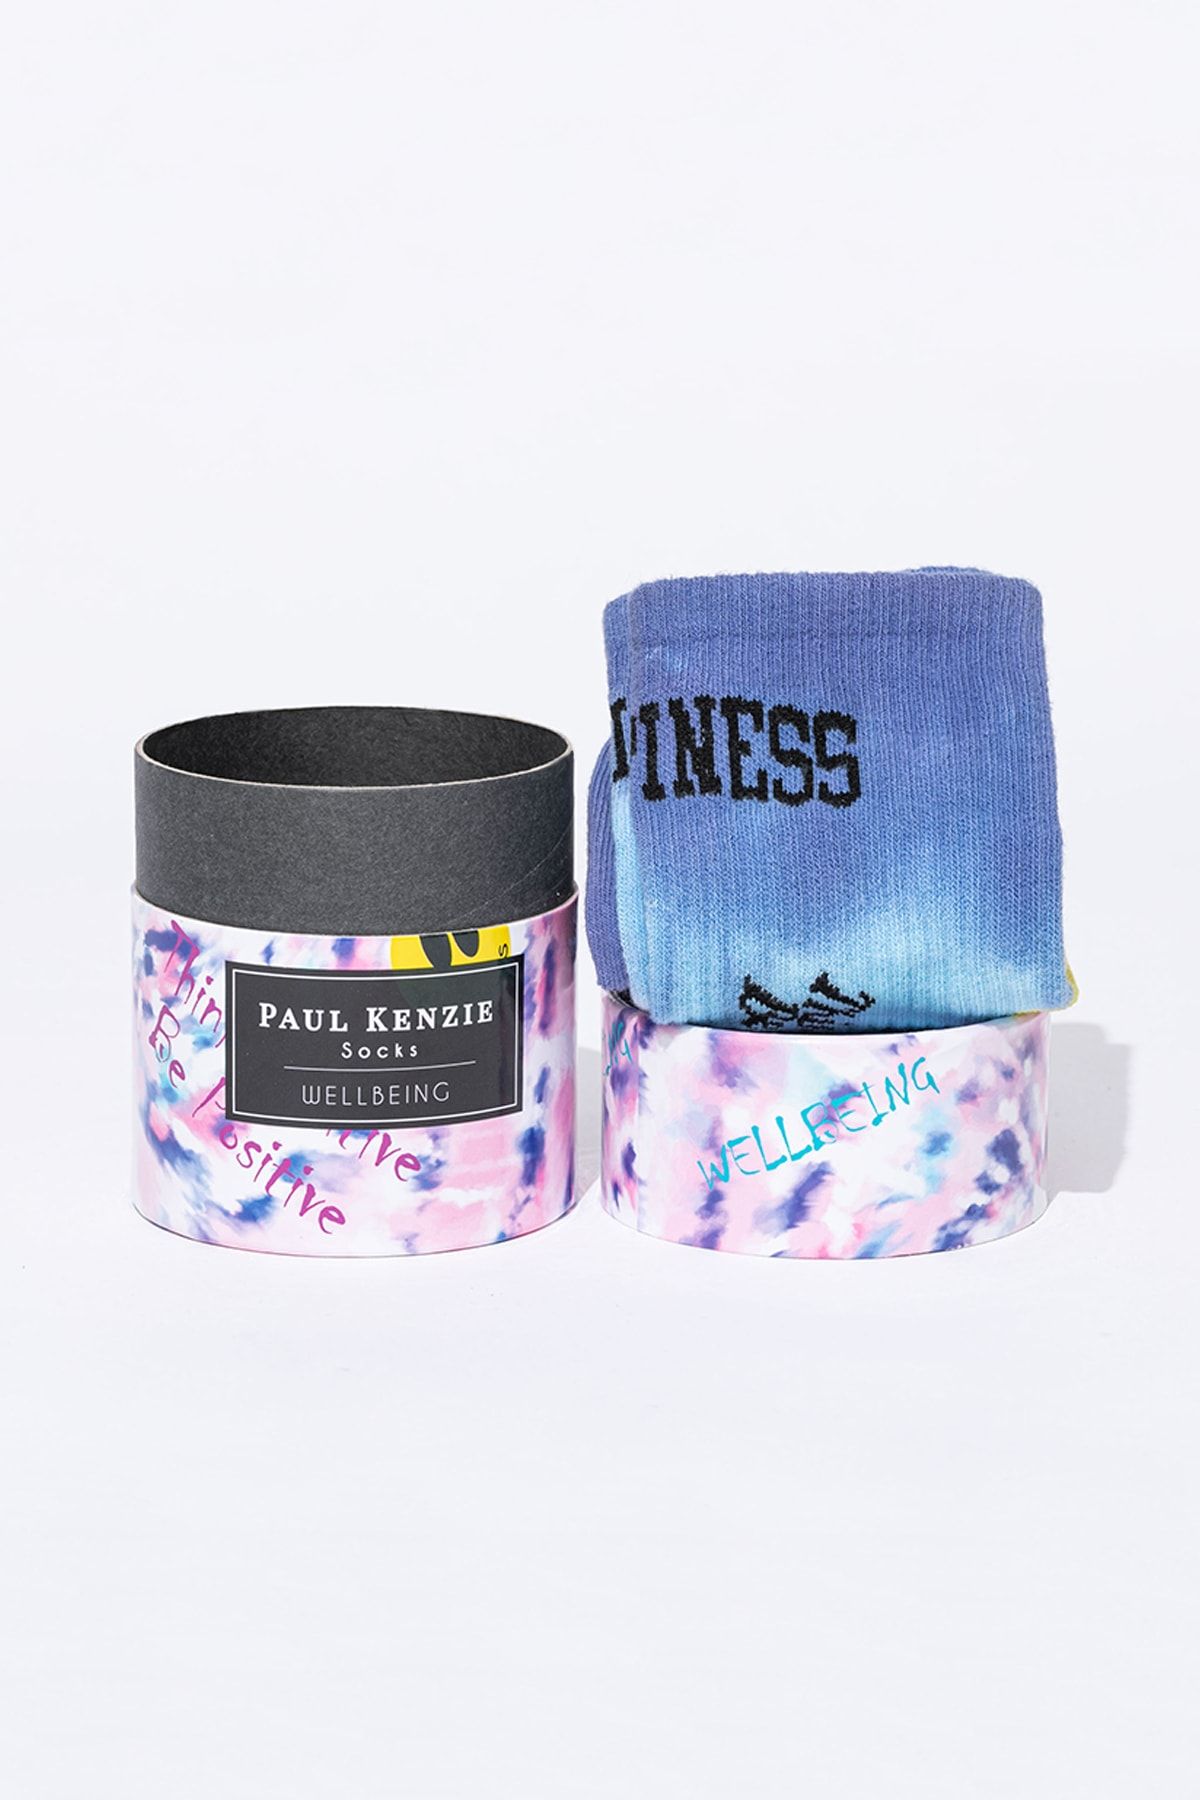 Paul Kenzie Smile-dye Unisex Batik Desenli Dikişsiz Tenis Çorap - Wellbeing